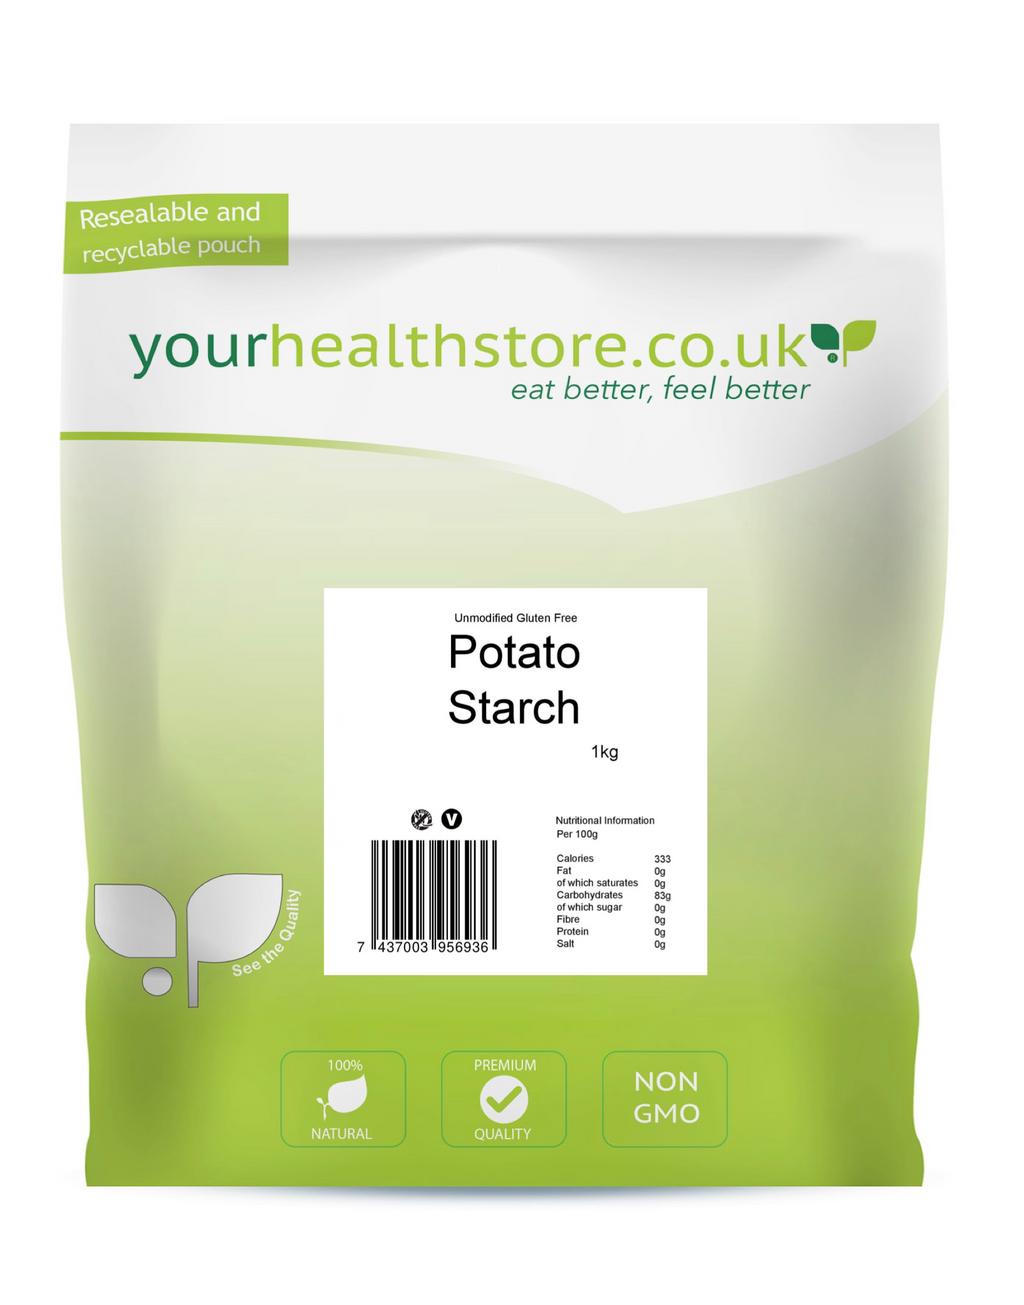 yourhealthstore Premium Unmodified Gluten Free Potato Starch 1kg